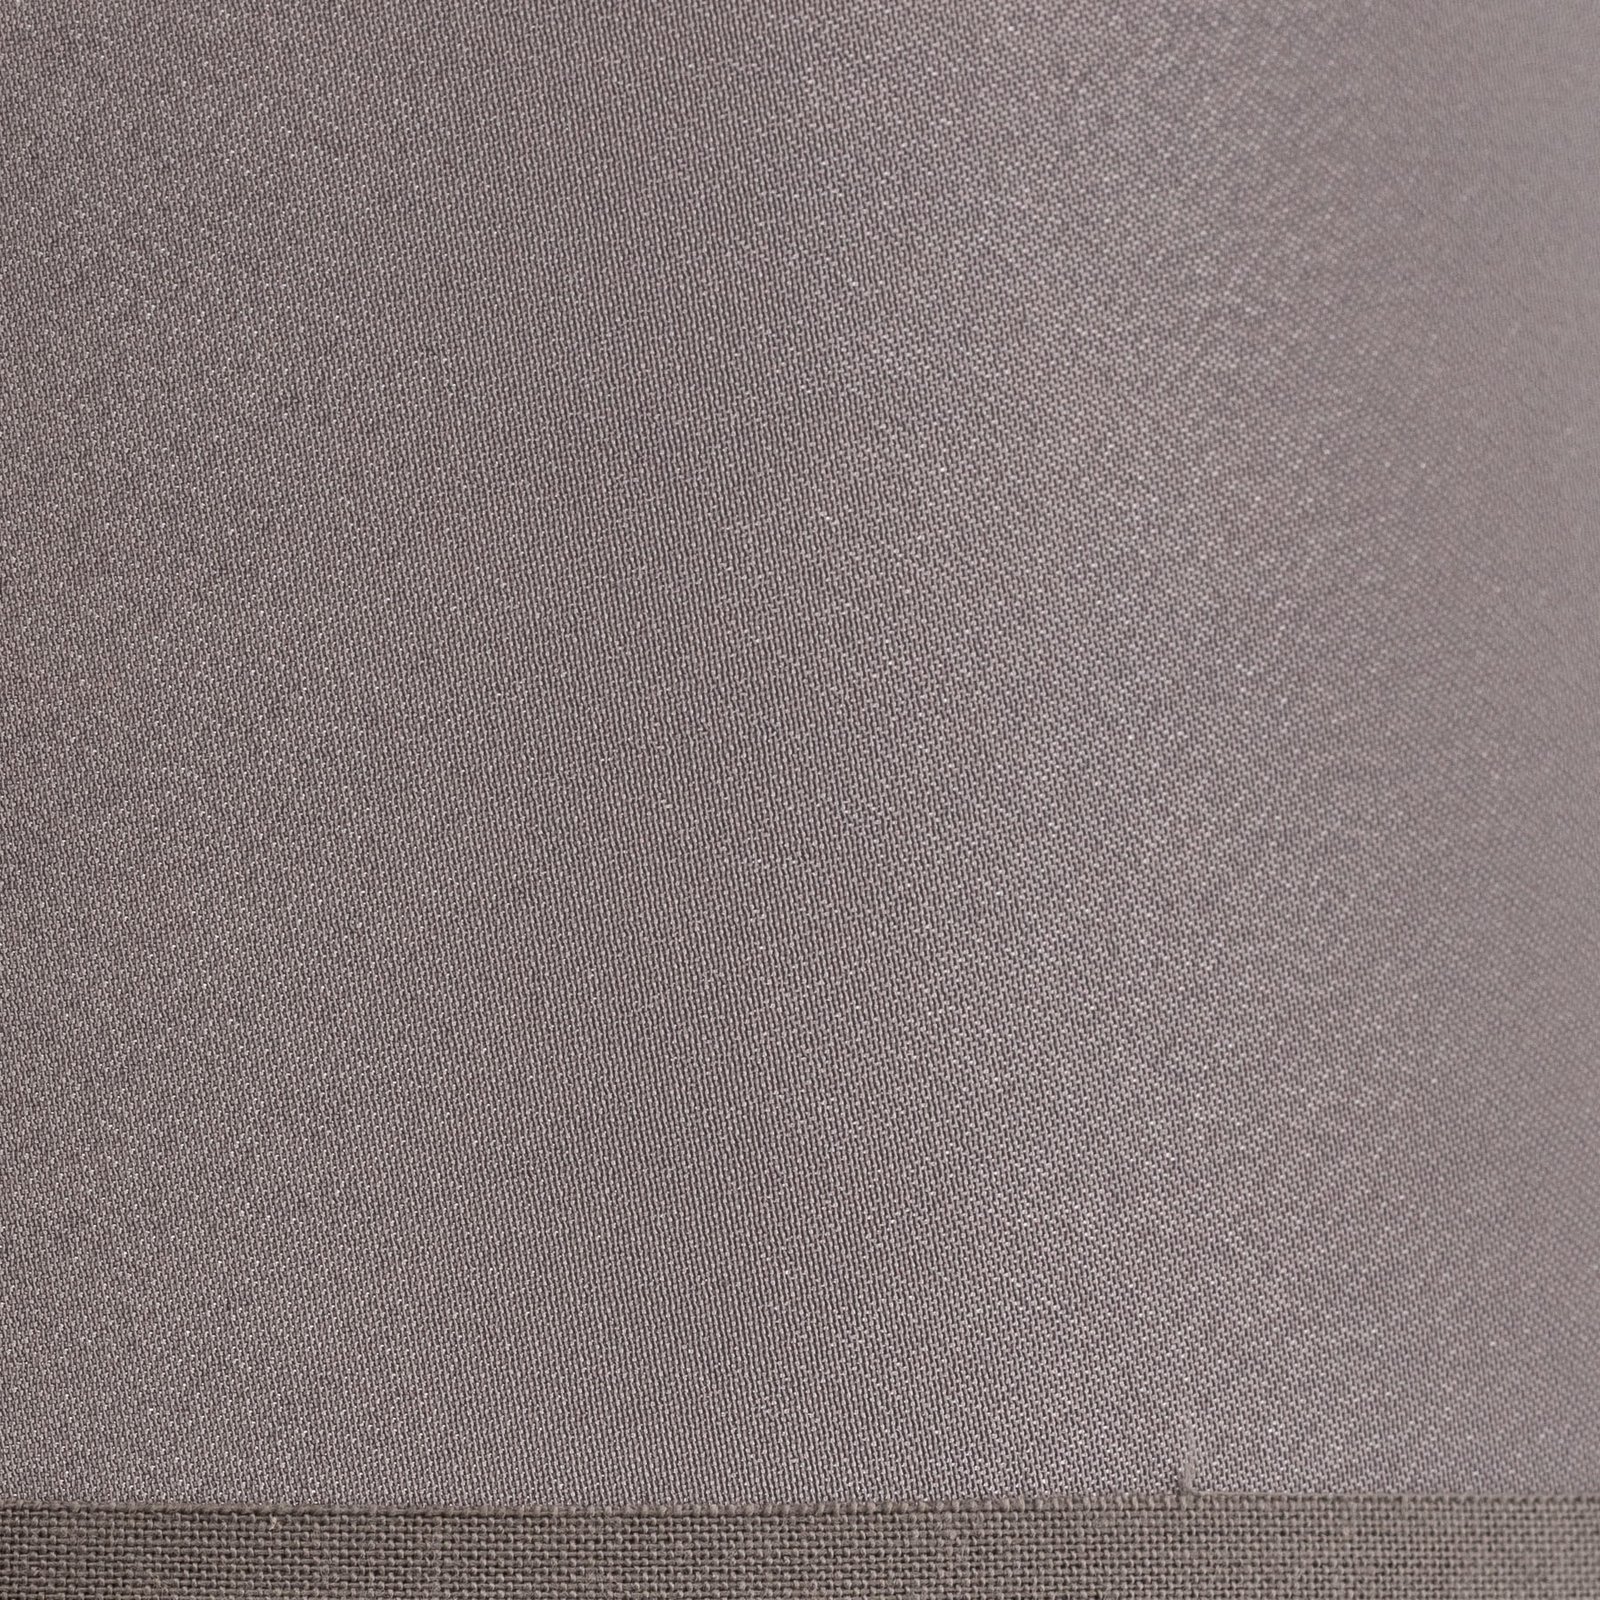 Kap Cone hoogte 18 cm, sits grijs/wit